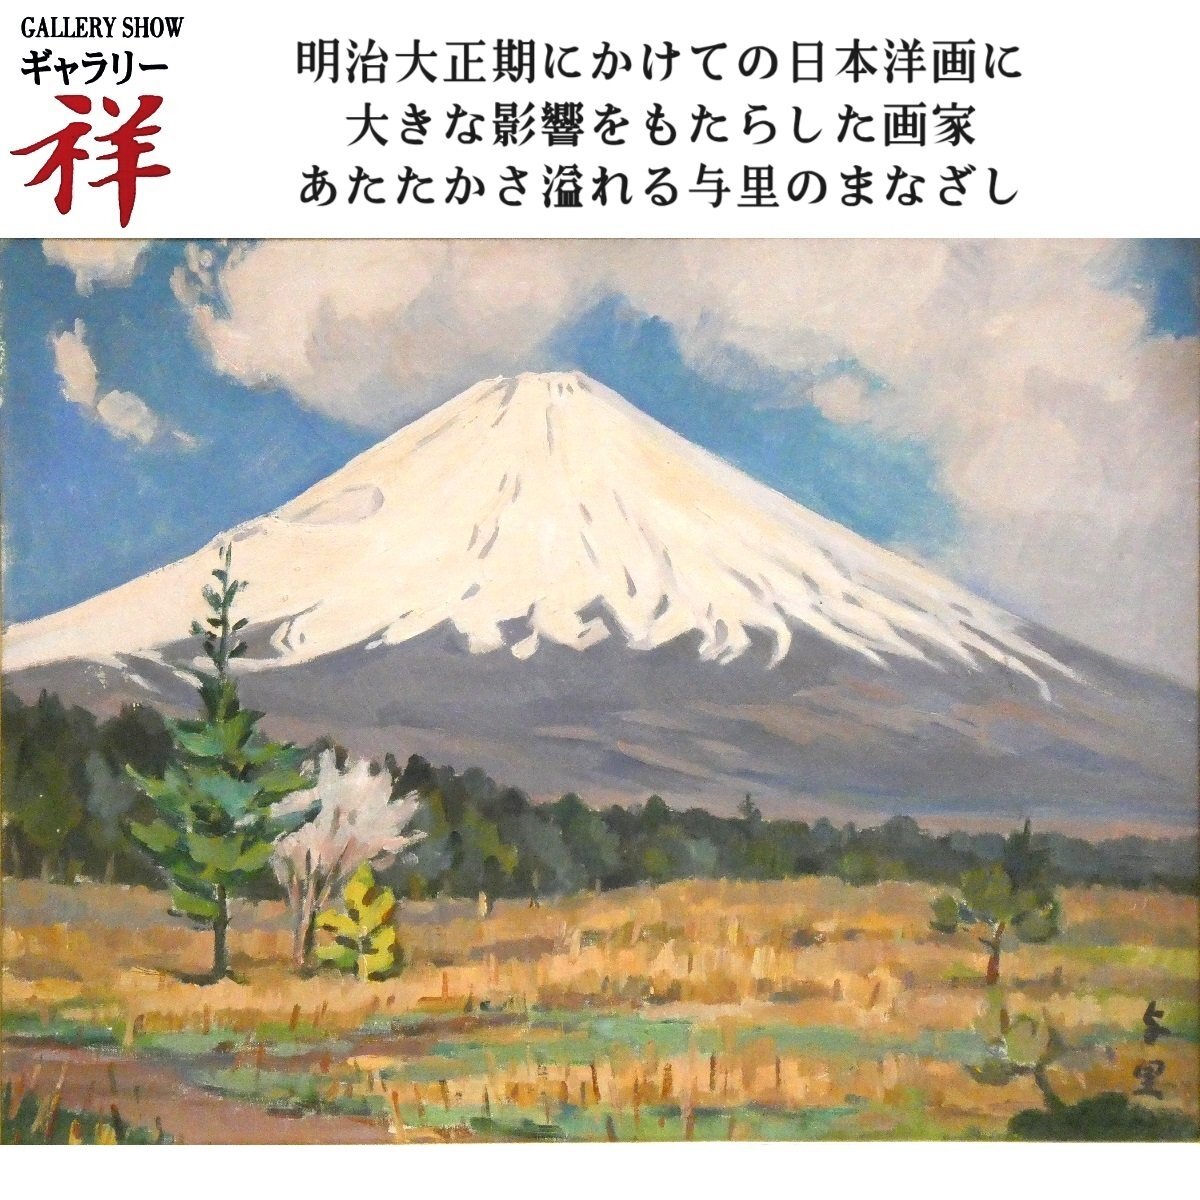 Sho [Œuvre authentique] Yori Saito Fuji Peinture à l'huile n° 10 Signé Maître né à Saitama de la peinture occidentale japonaise moderne Fuusan-kai Mt. Fuji Manuscrit unique en son genre [Galerie Sho], peinture, peinture à l'huile, Nature, Peinture de paysage